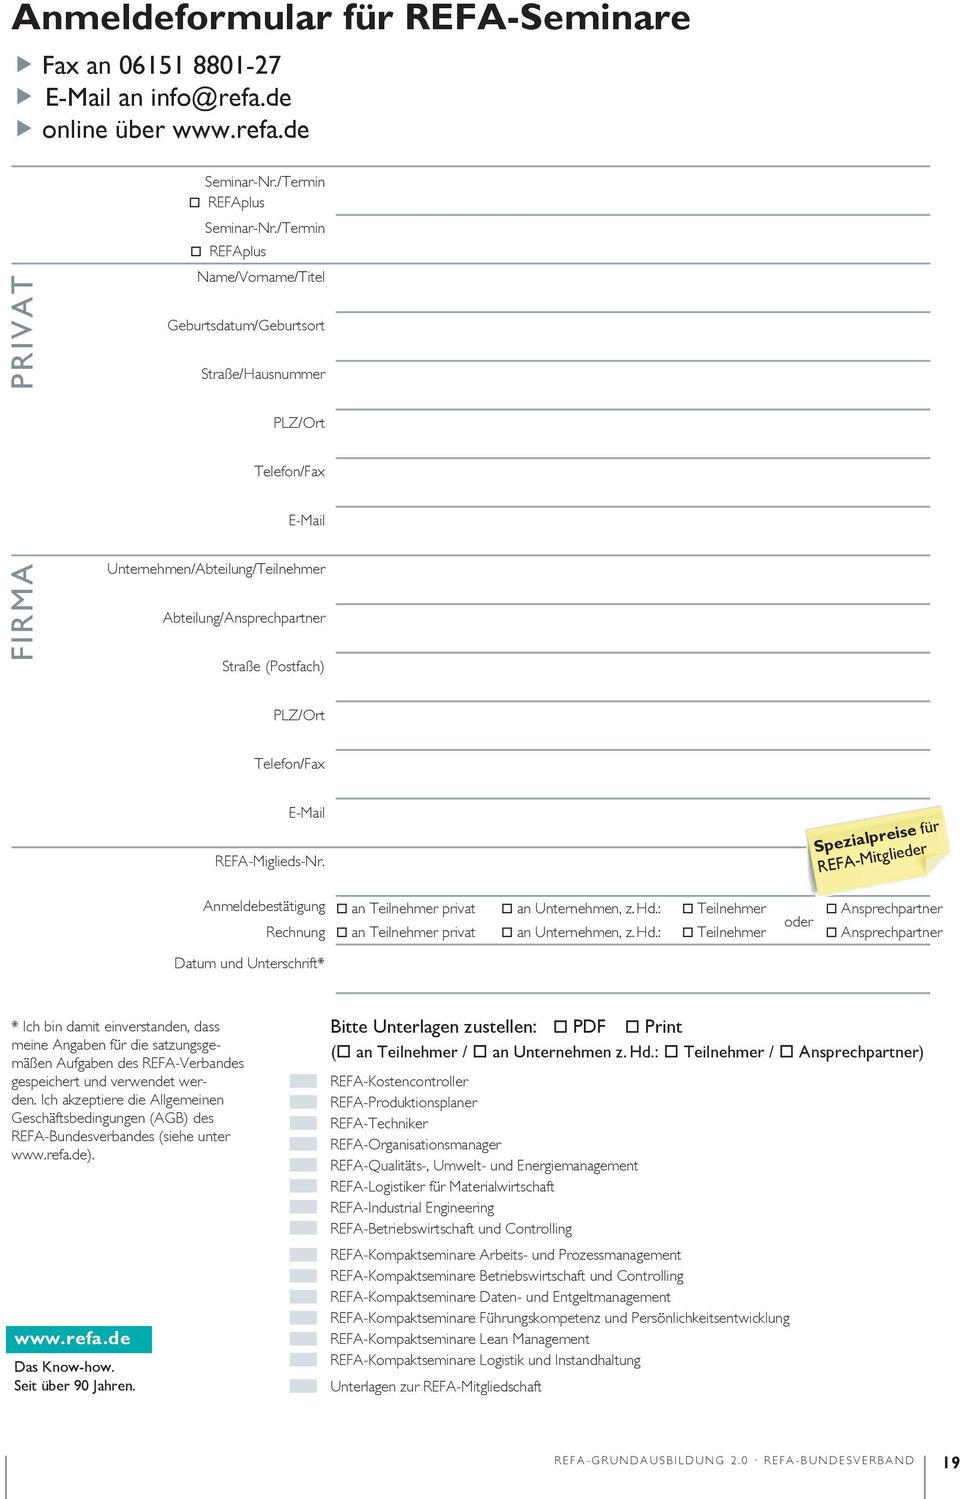 Telefon/Fax E-Mail REFA-Miglieds-Nr. Anmeldebestätigung Rechnung Spezialpreise für REFA-Mitglieder an Teilnehmer privat an Unternehmen, z. Hd.